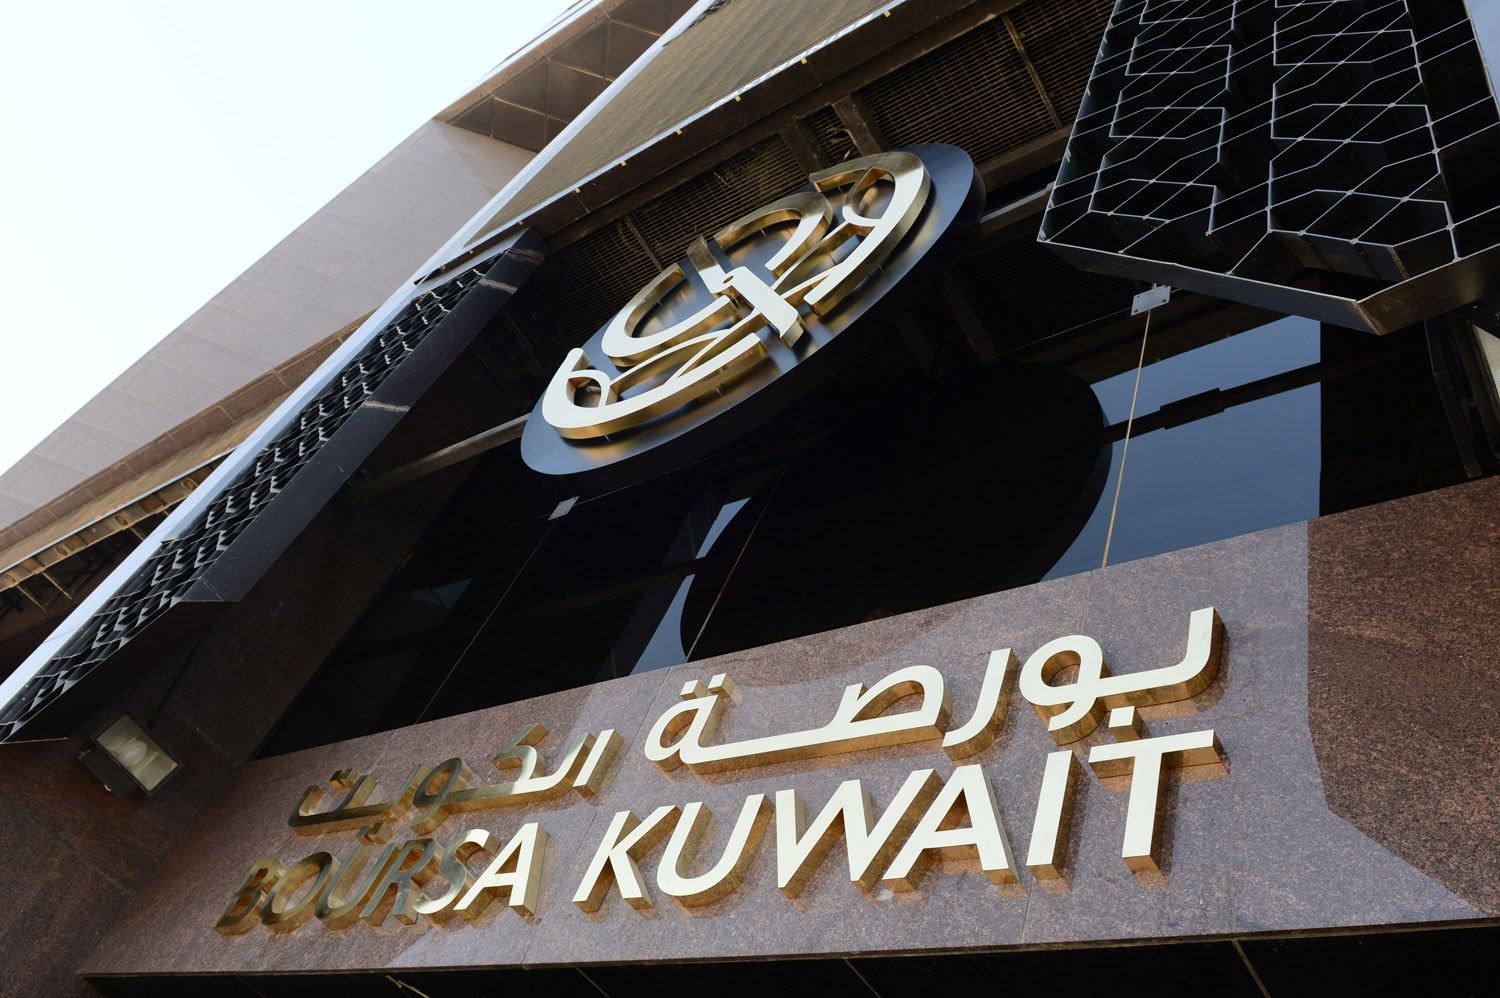  بورصة الكويت تغلق تعاملاتها على انخفاض مؤشرها العام